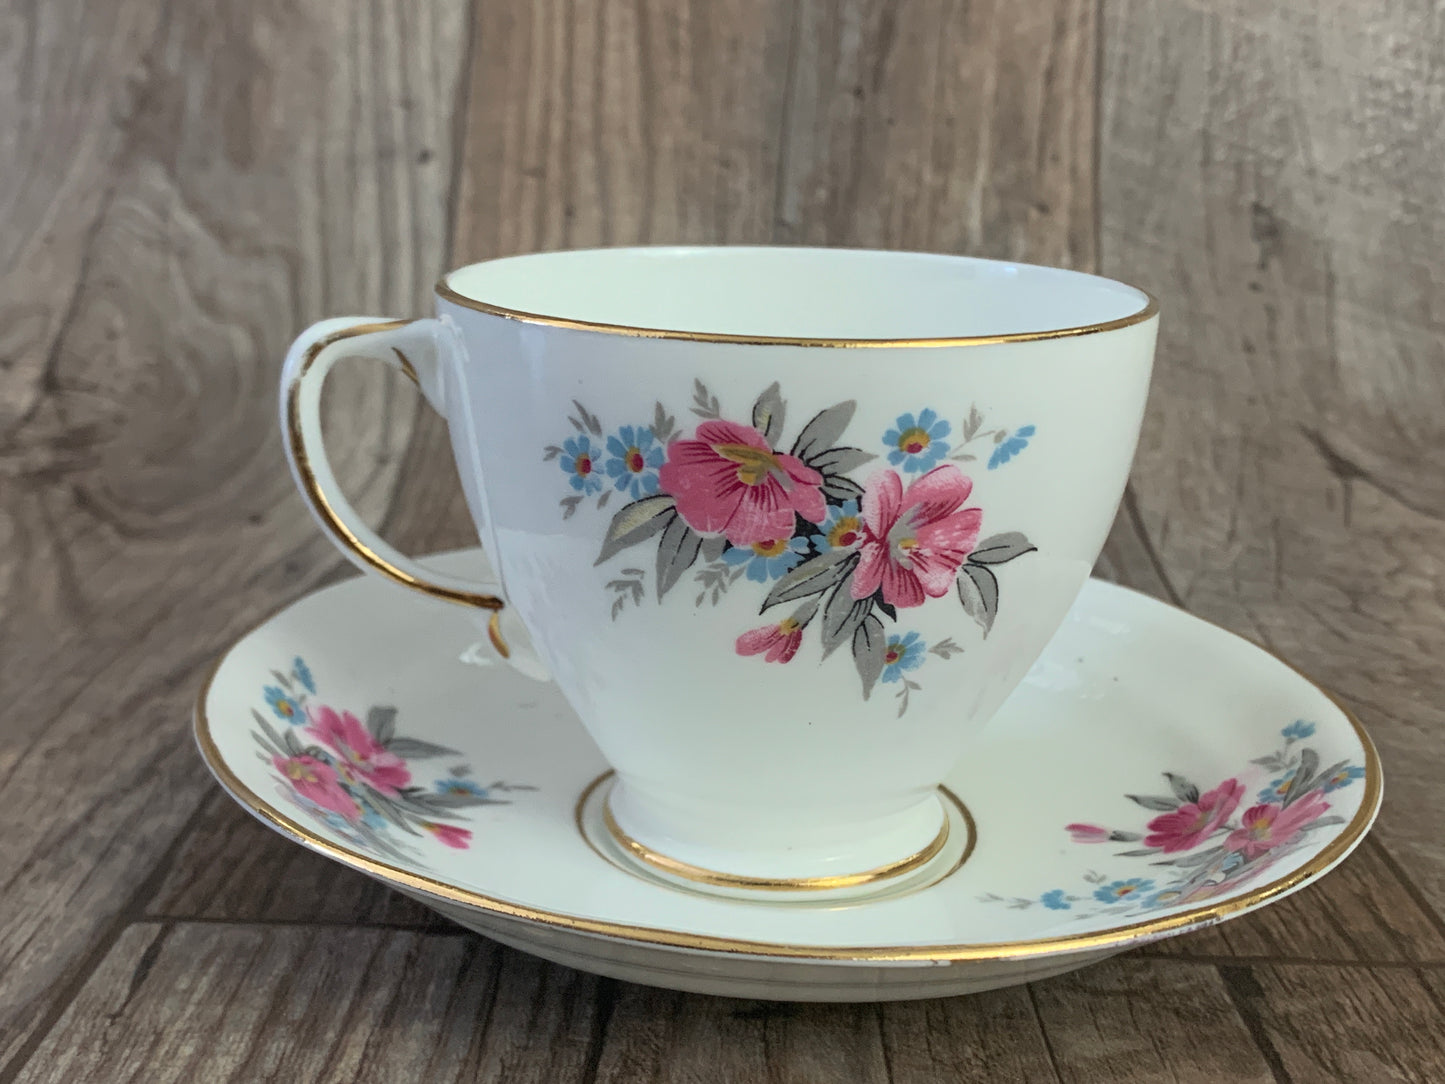 Pink and Blue Floral Vintage Teacup and Saucer Set